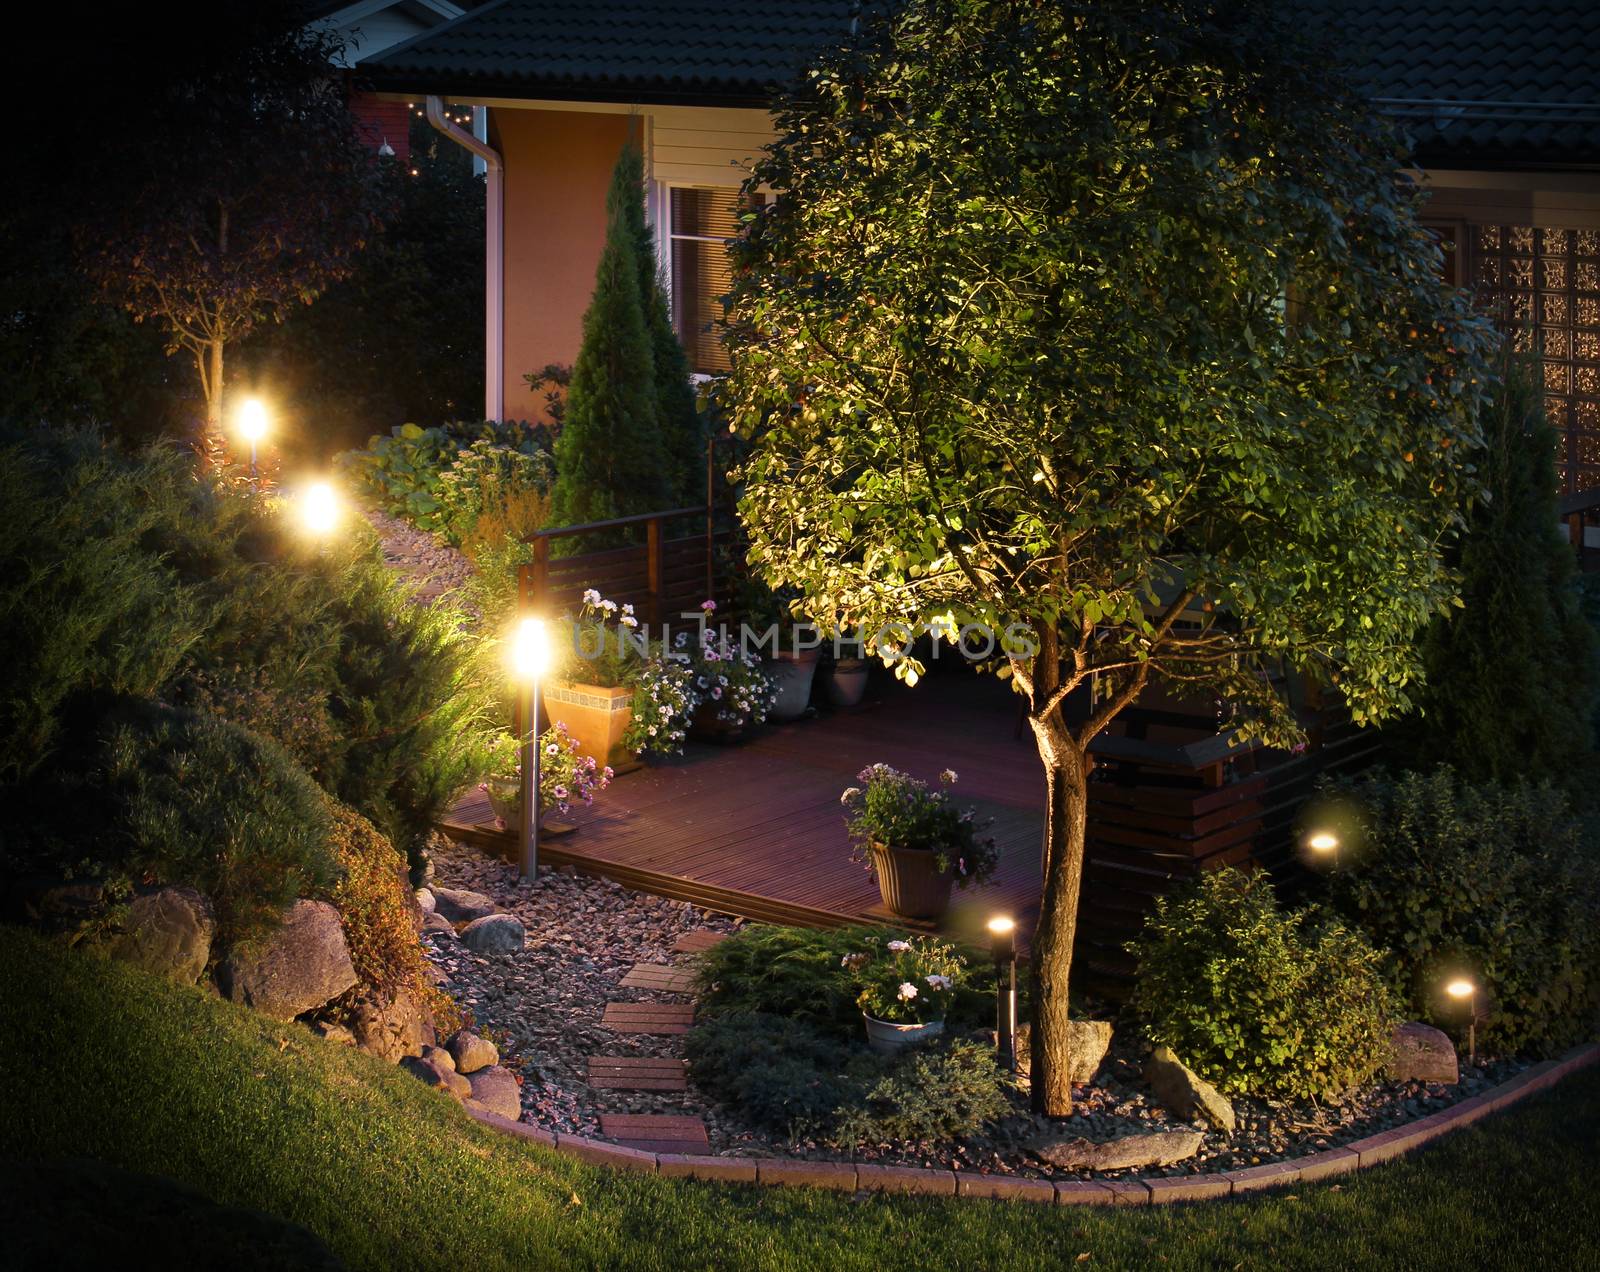 Illuminated garden path patio by anterovium